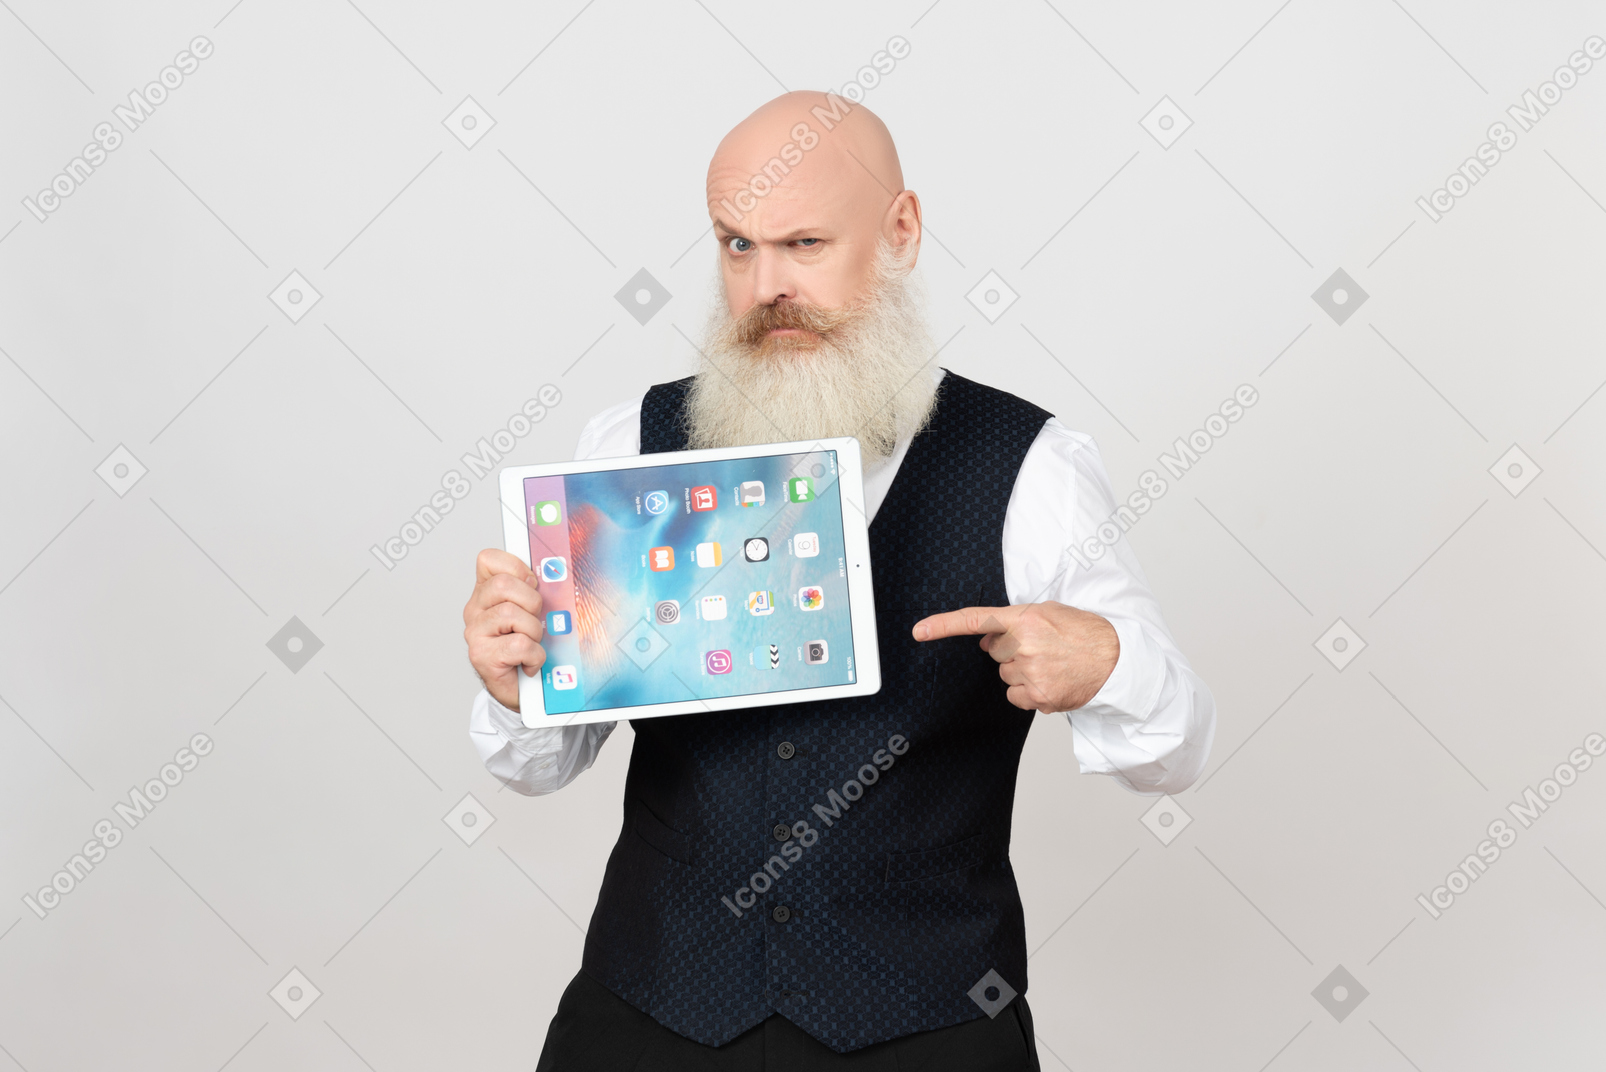 Пожилой мужчина держит ipad и указывает на него